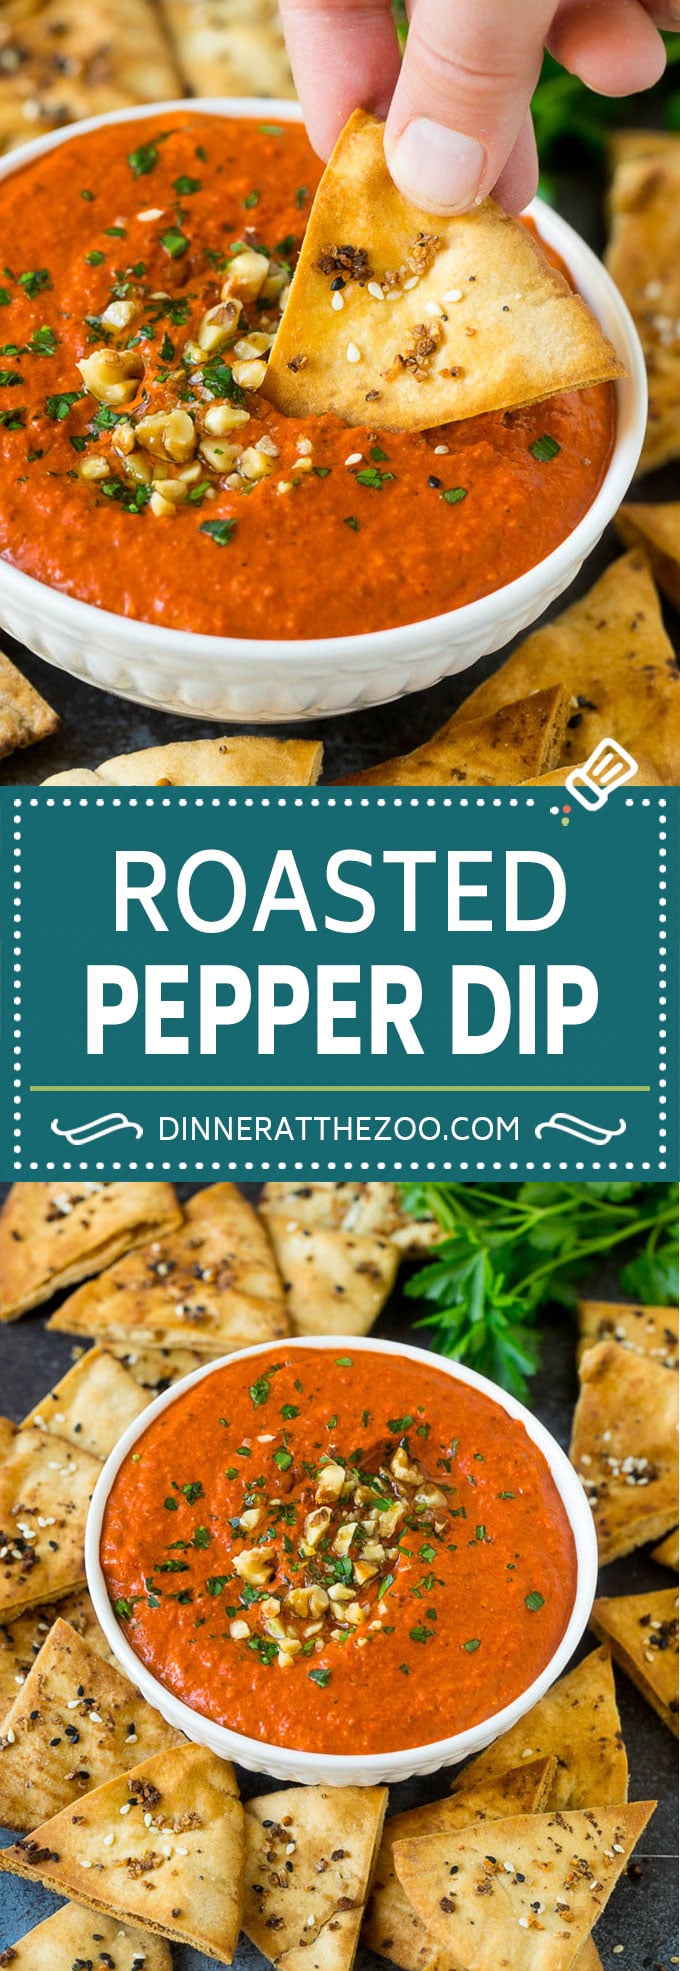 Roasted Red Pepper Dip | Muhammara Dip | Middle Eastern Dip #bellpeppers #walnuts #dip #appetizer #dinneratthezoo